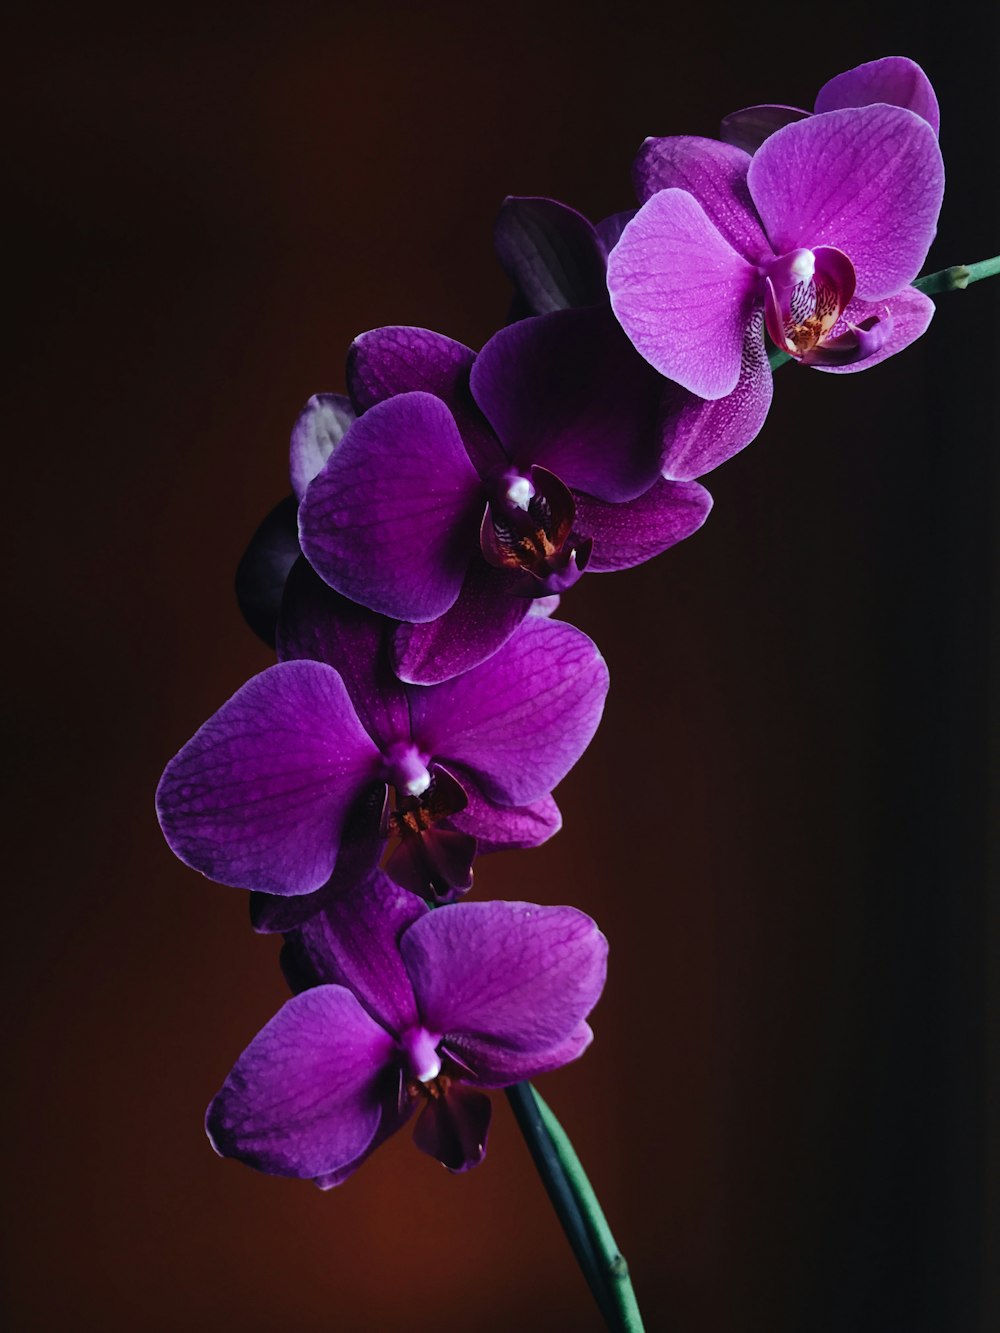 紫色の蘭の花のクローズアップ写真